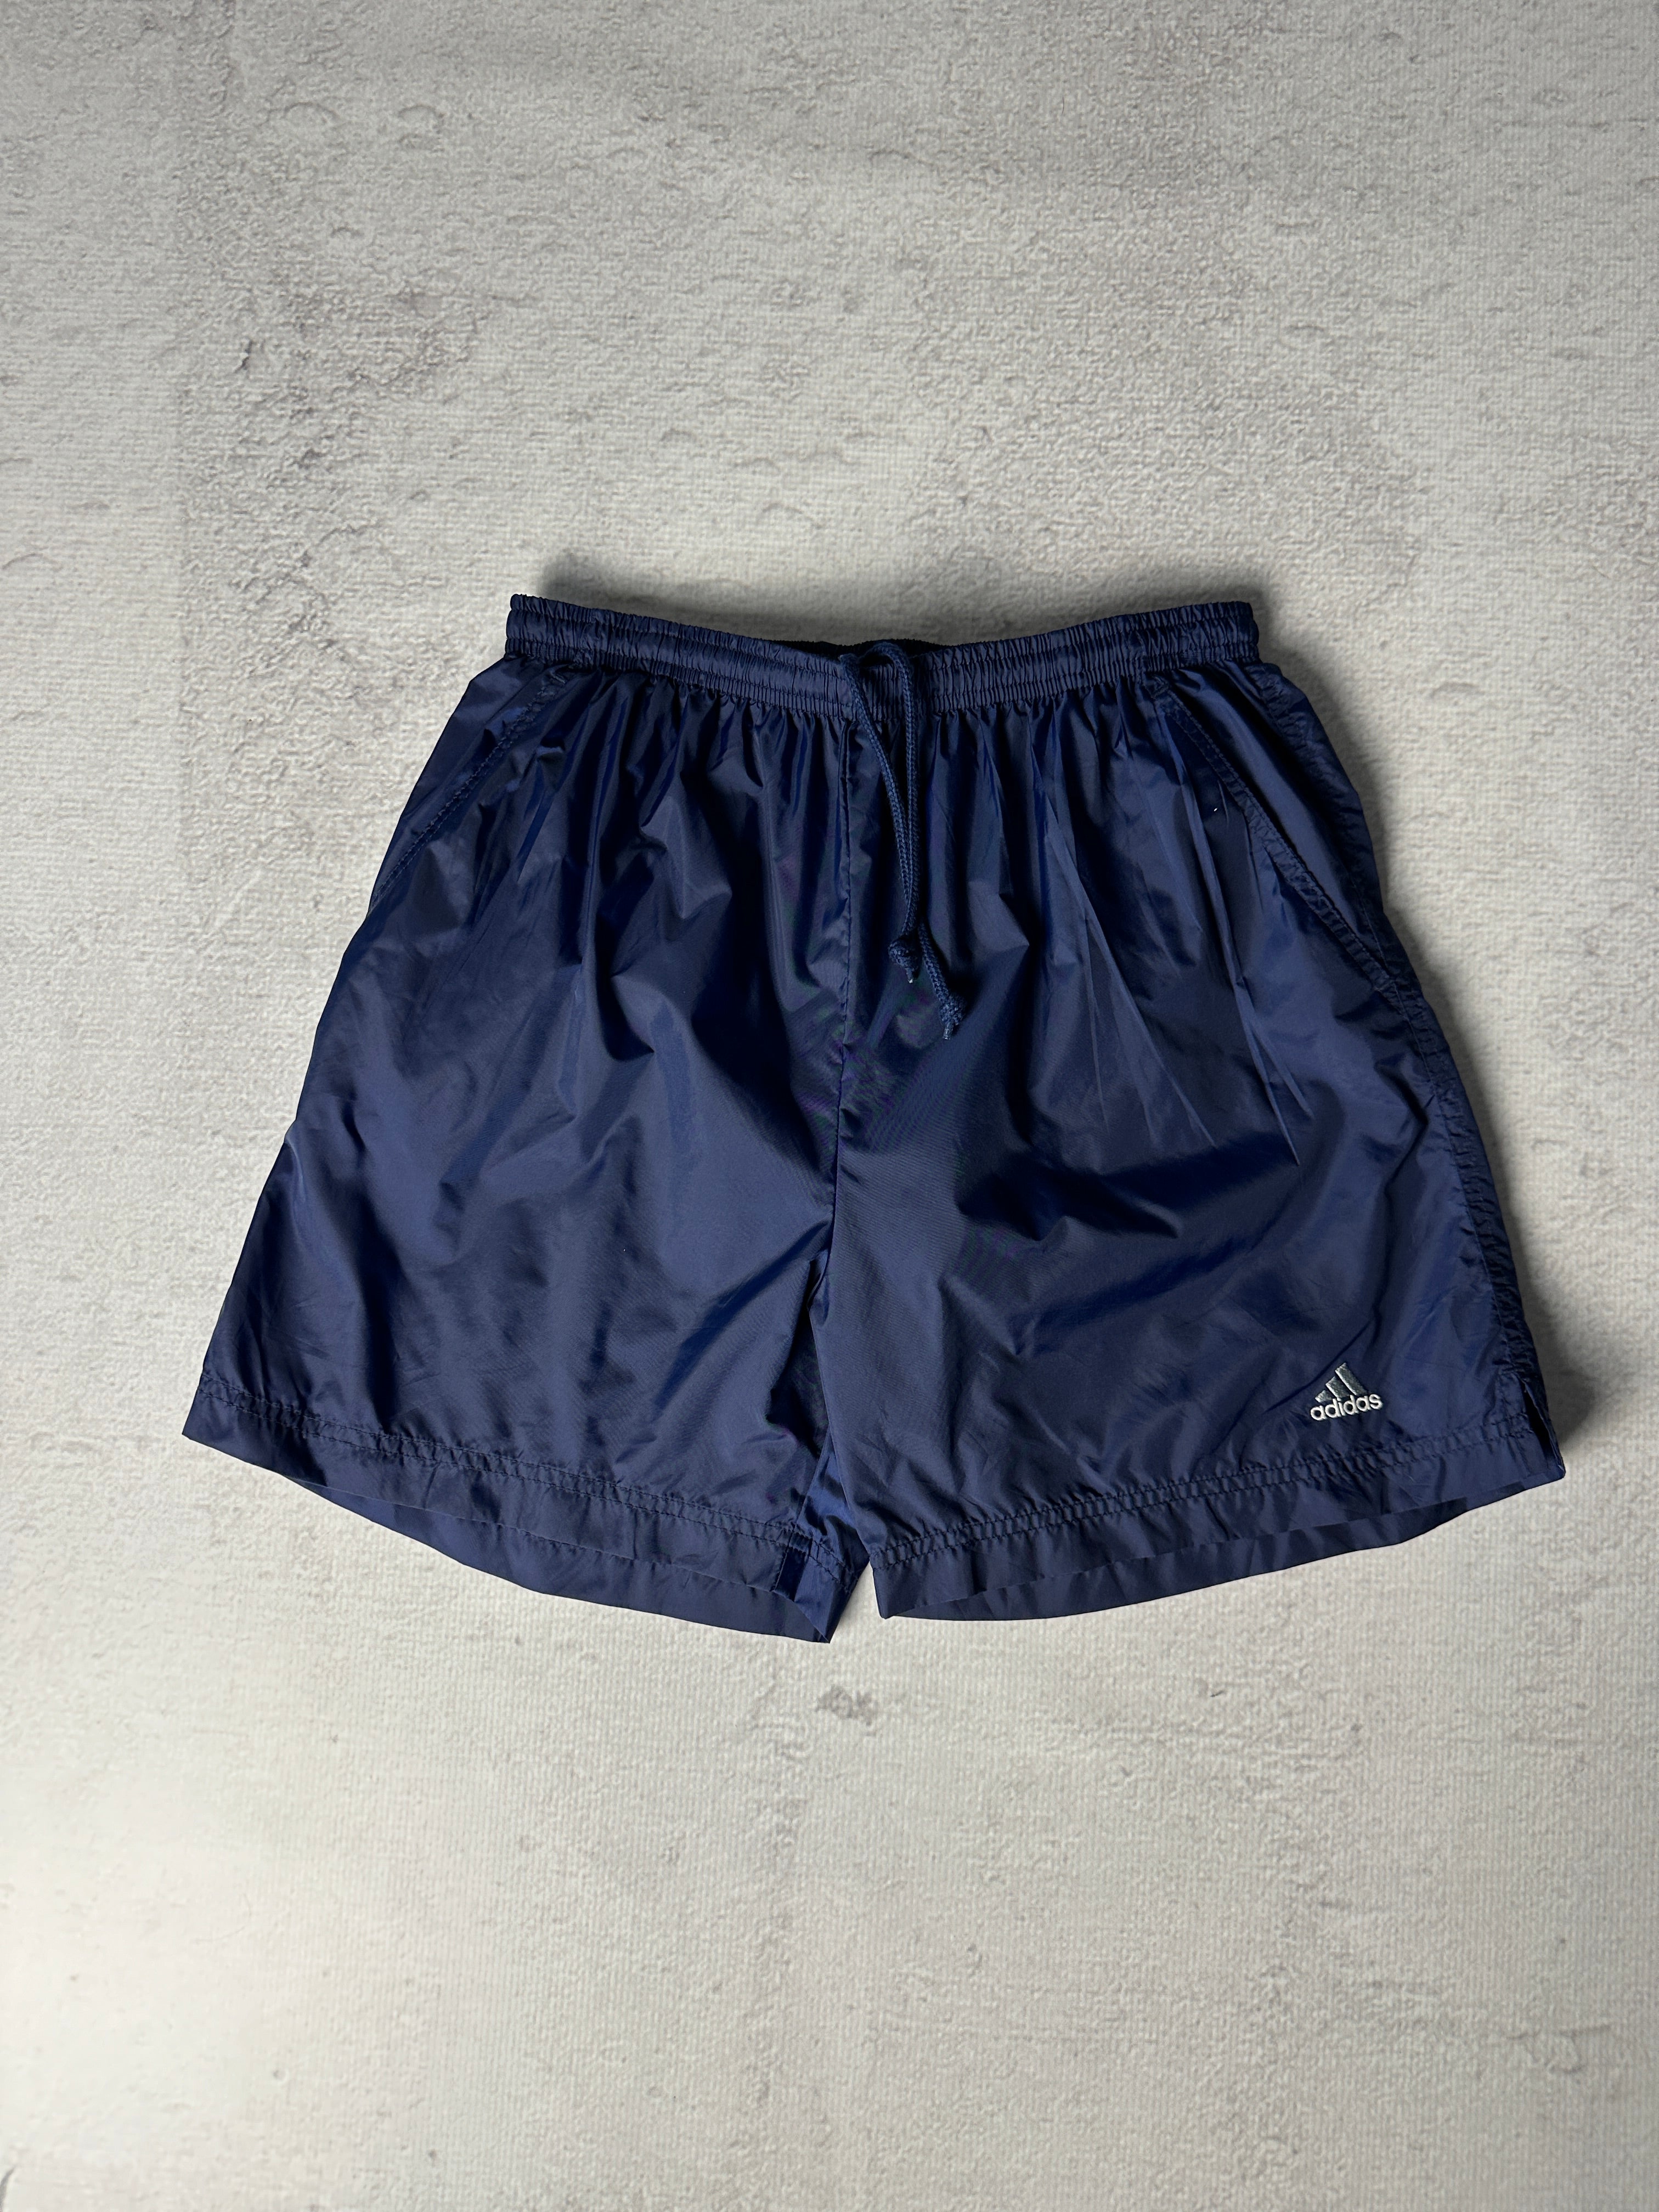 Vintage Adidas Track Shorts - Men's Medium